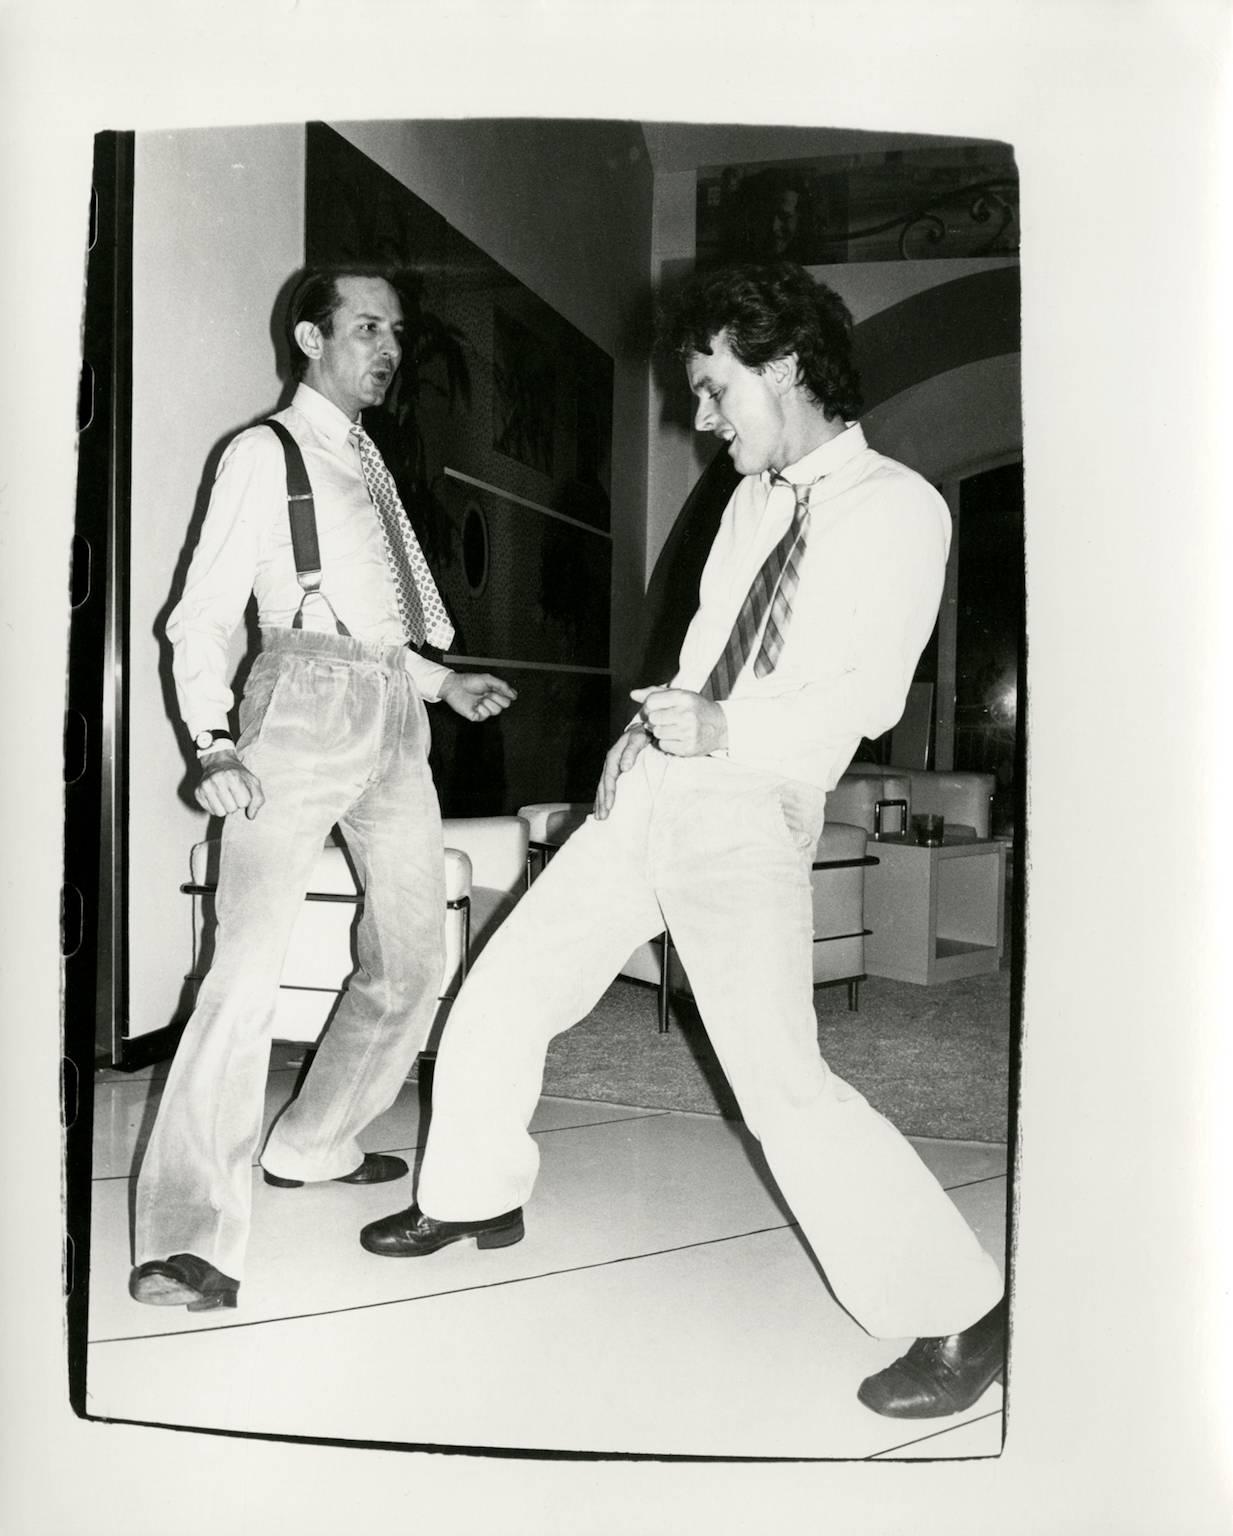 Andy Warhol, Photographie de Fred Hughes dansant avec un homme non identifié, 1986